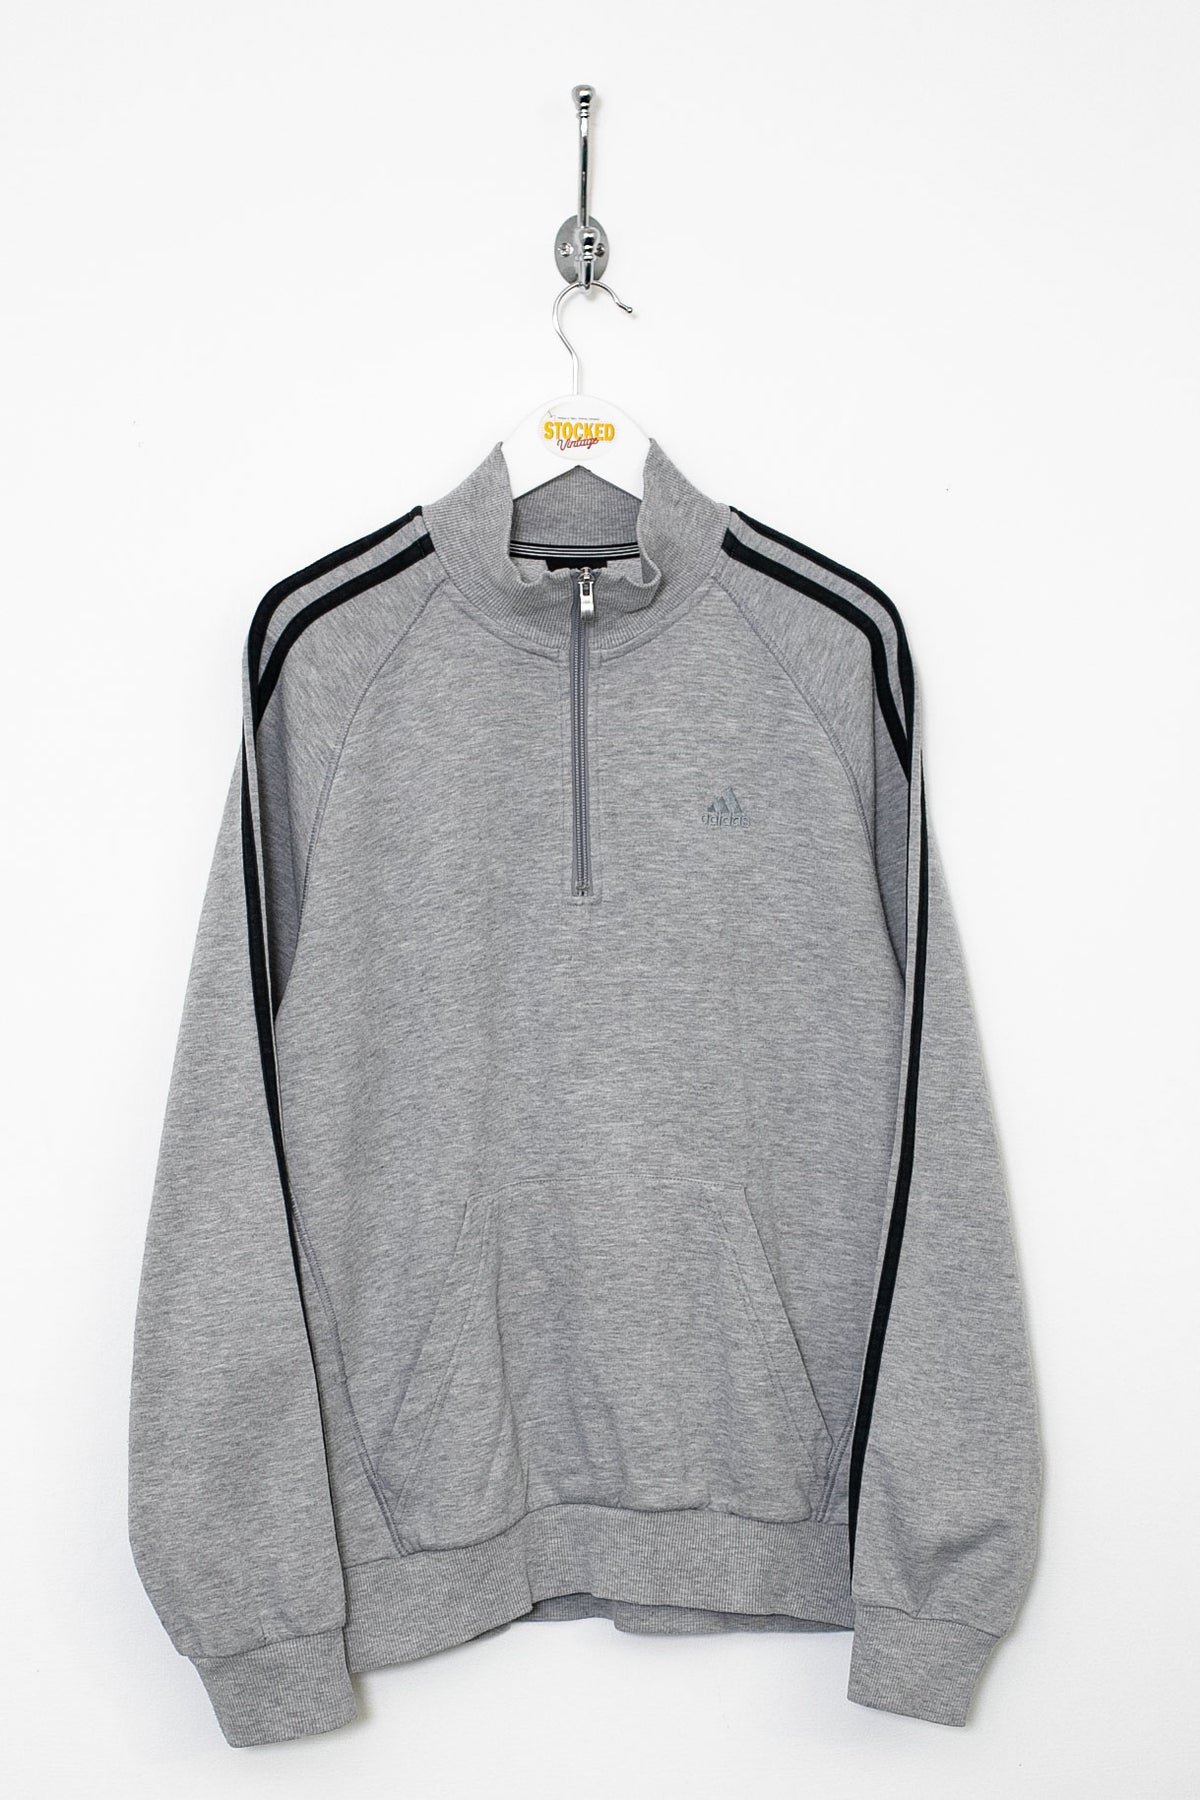 00s Adidas 1/4 Zip Sweatshirt (S)